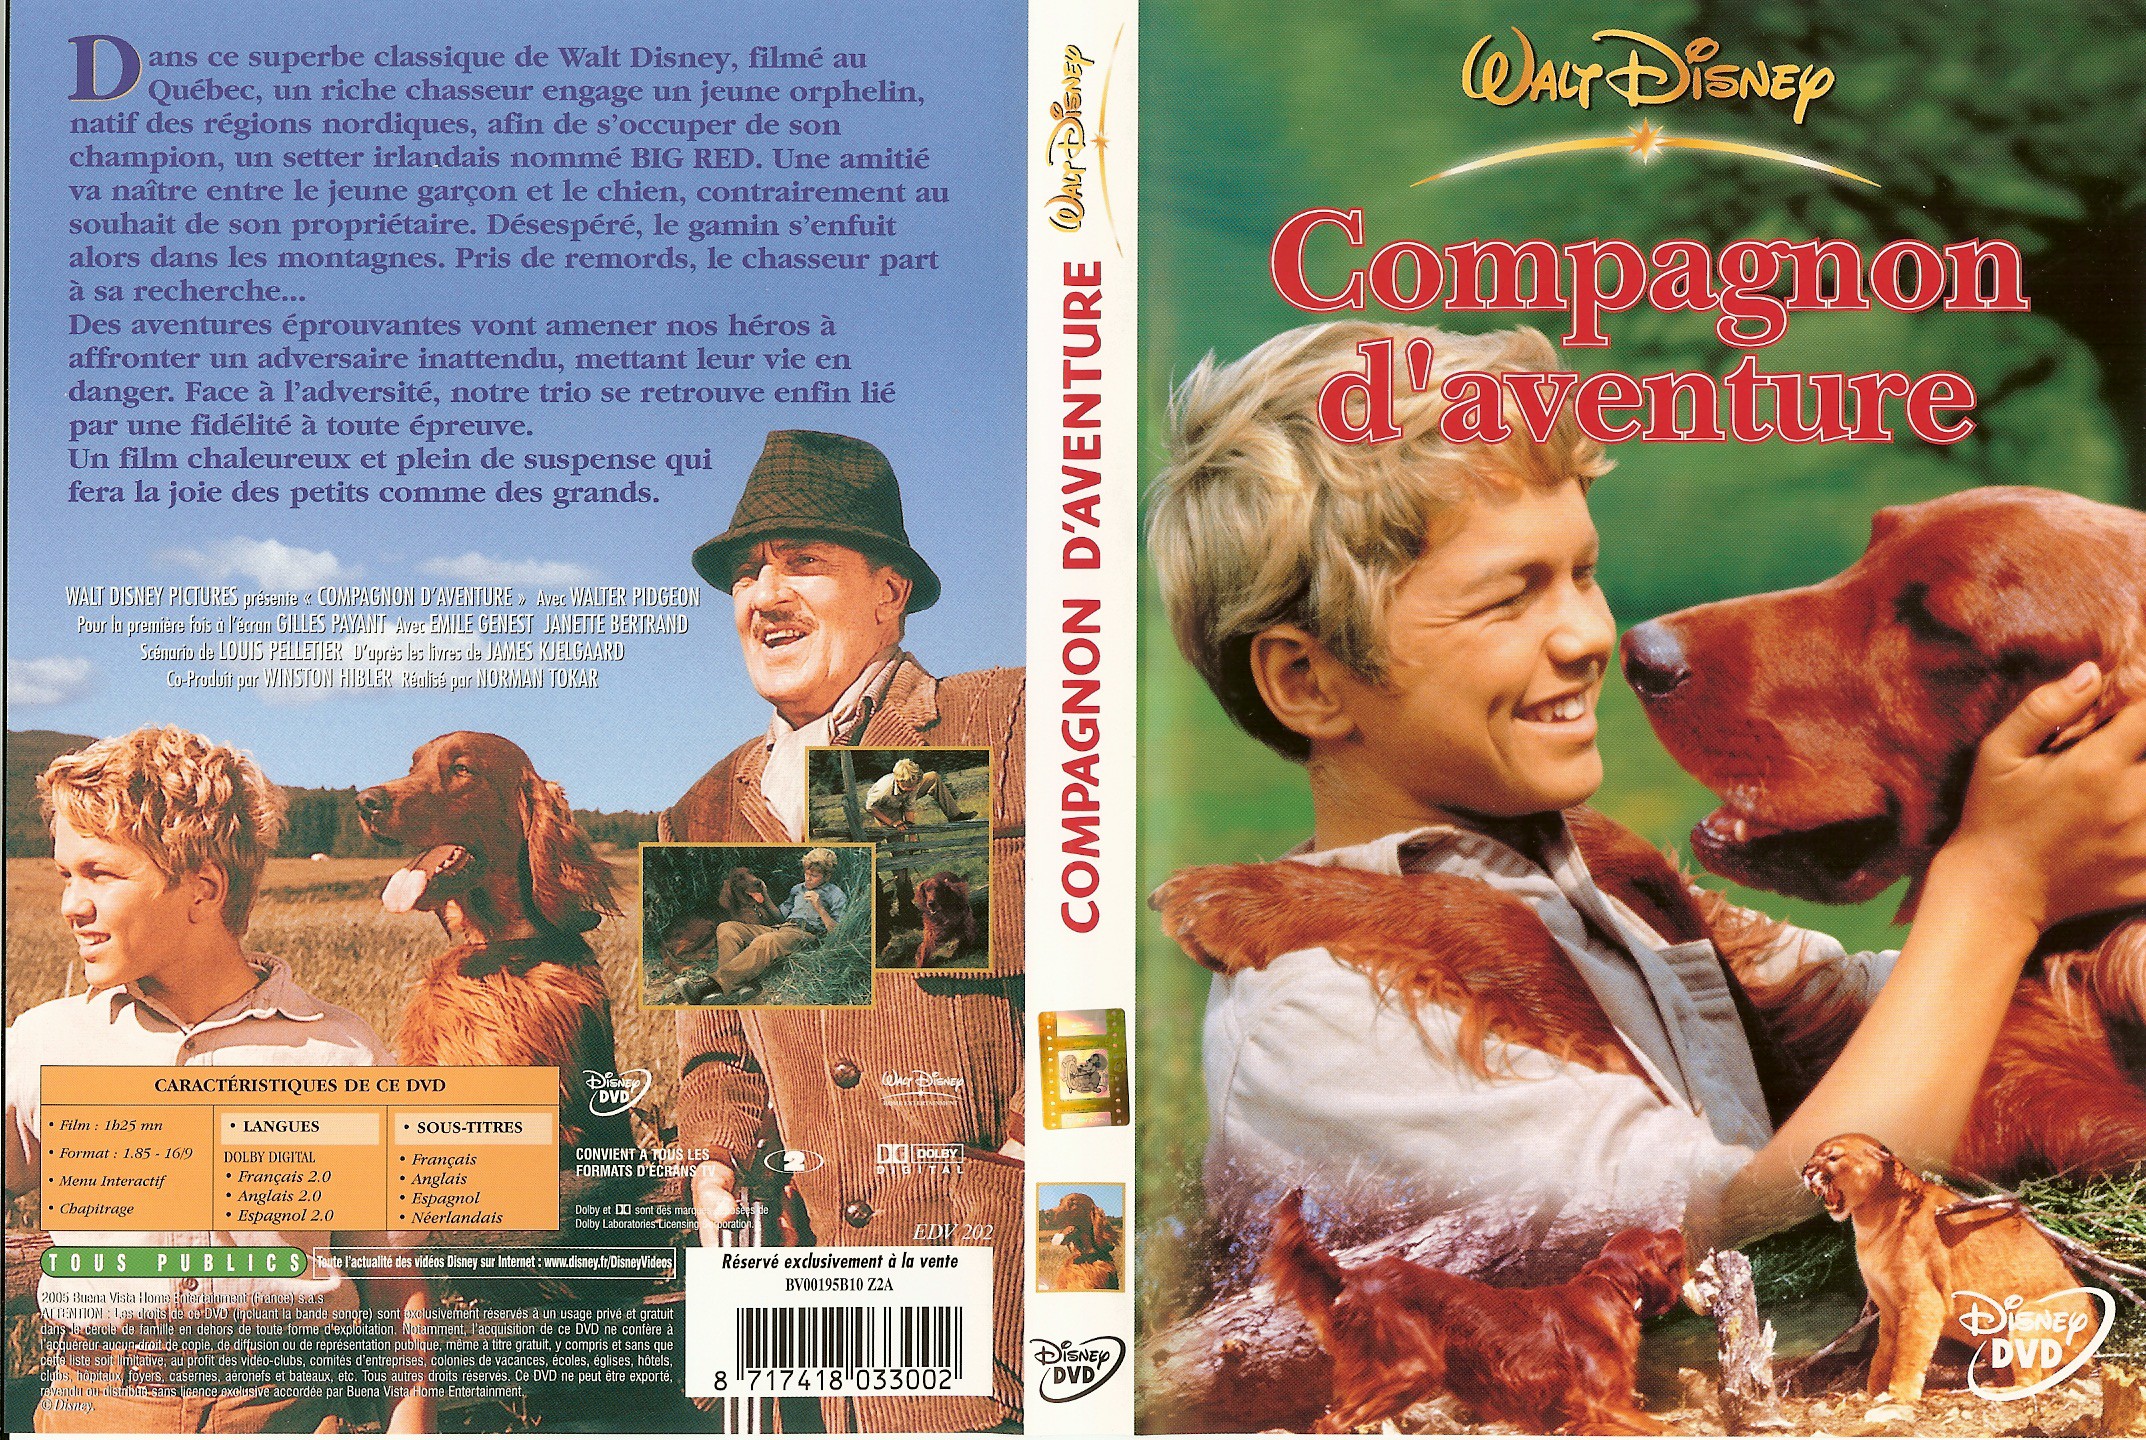 Jaquette DVD Compagnon d